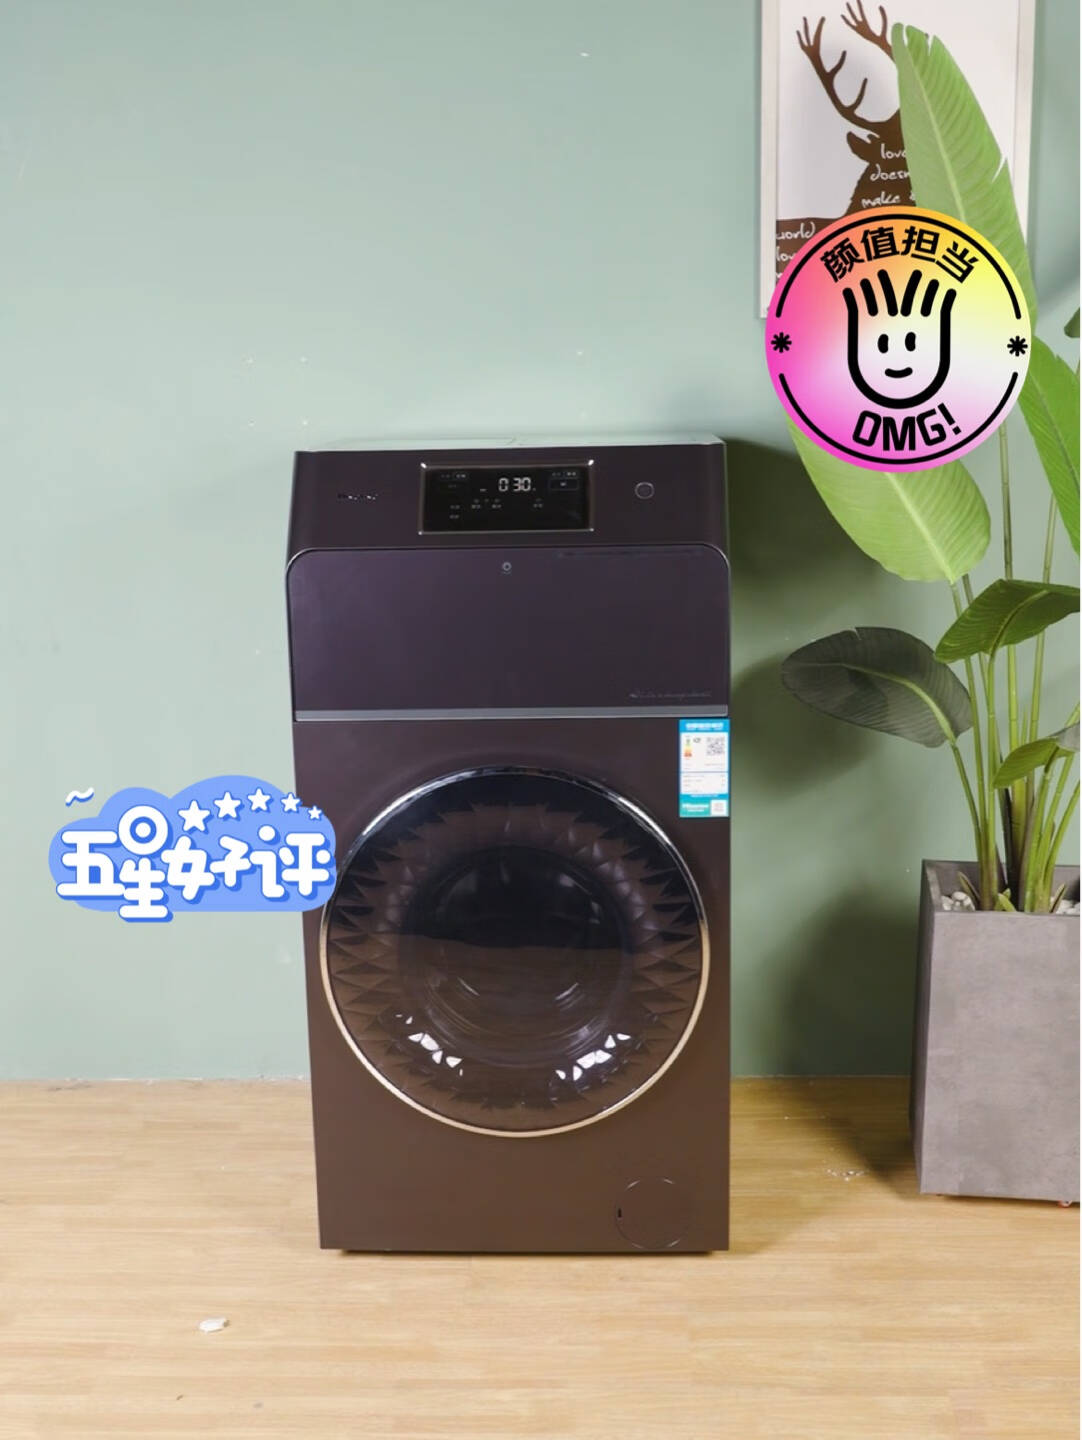 海信(Hisense)分区洗衣机全自动滚筒12公斤三筒大容量智投除菌筒自洁WIFI智能物联直驱变频HG12143YDI